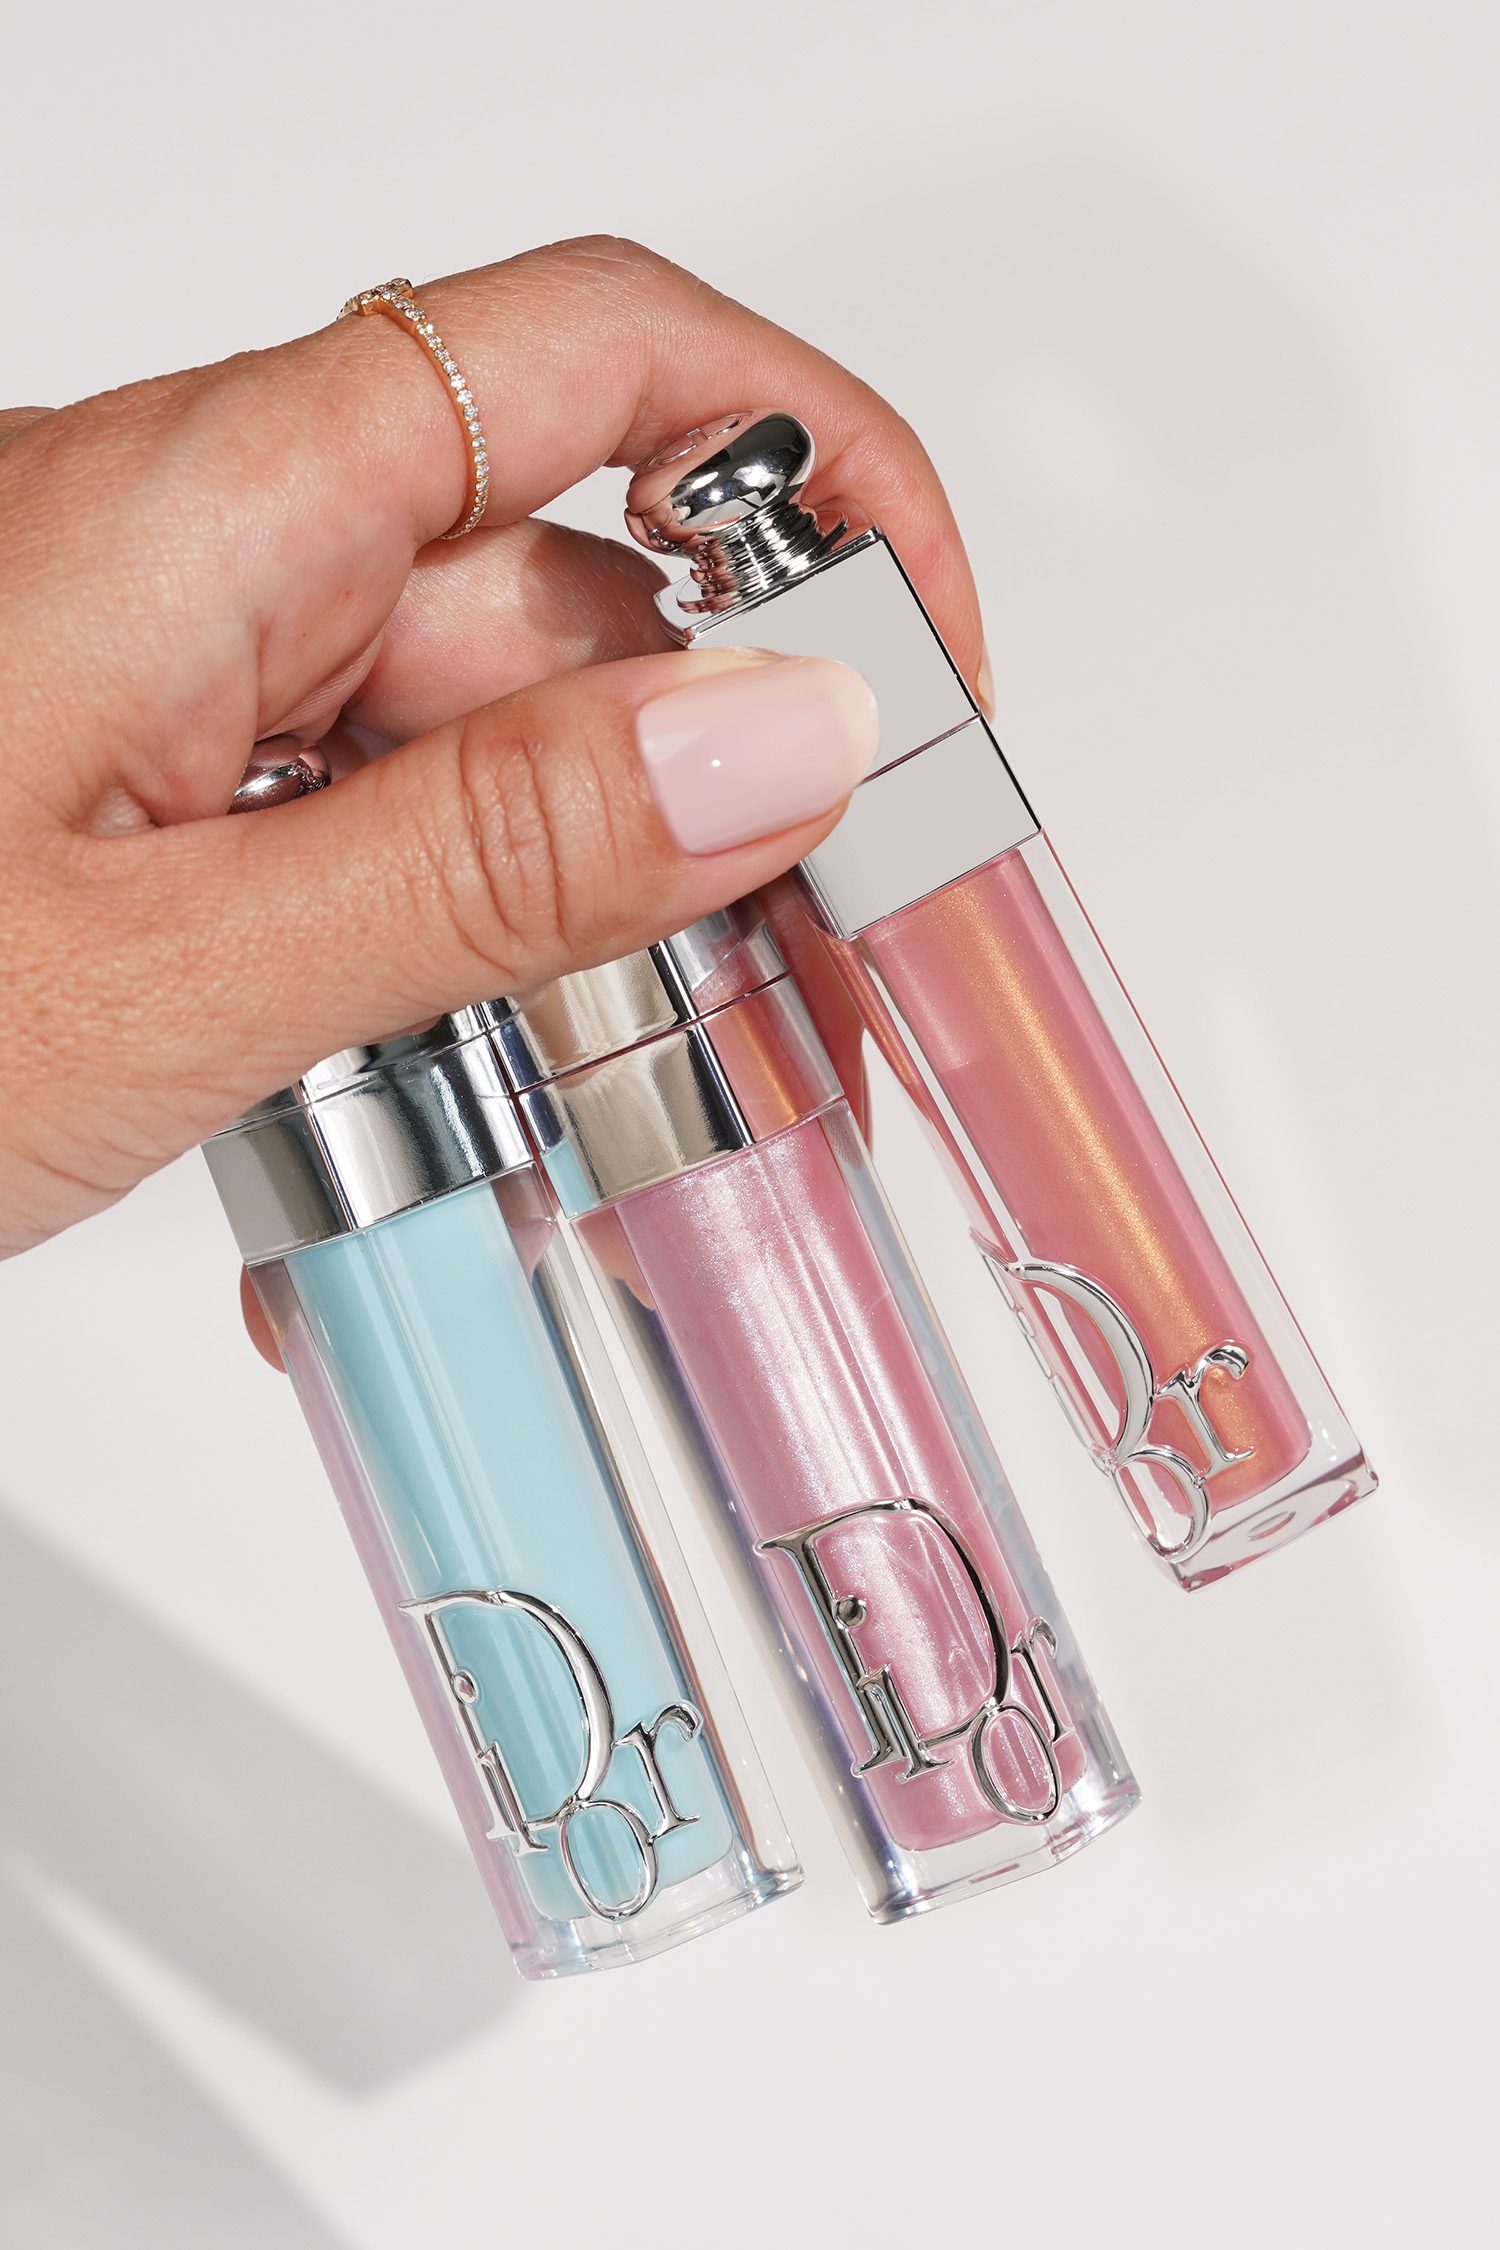 Dior Addict Pouch: Lip Oil and Lipstick Duo